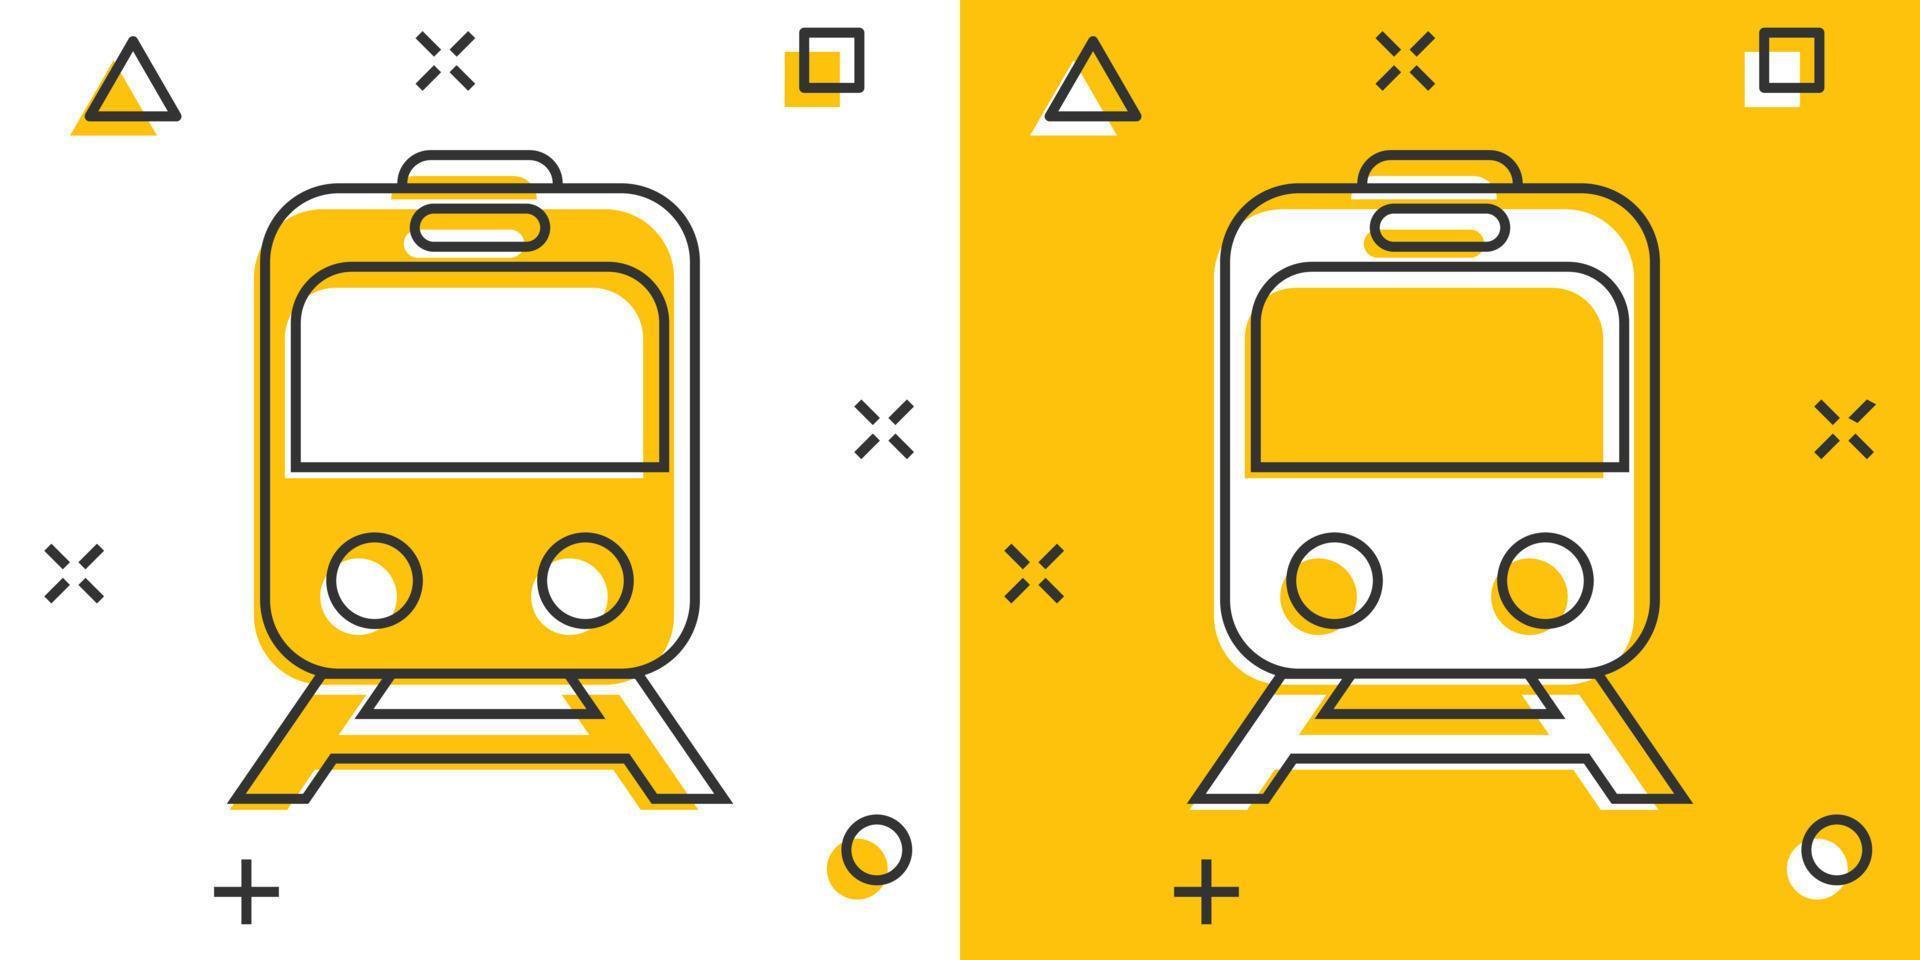 ícone do metrô em estilo cômico. ilustração em vetor trem metrô dos desenhos animados no fundo branco isolado. conceito de negócio de efeito de respingo de carga ferroviária.